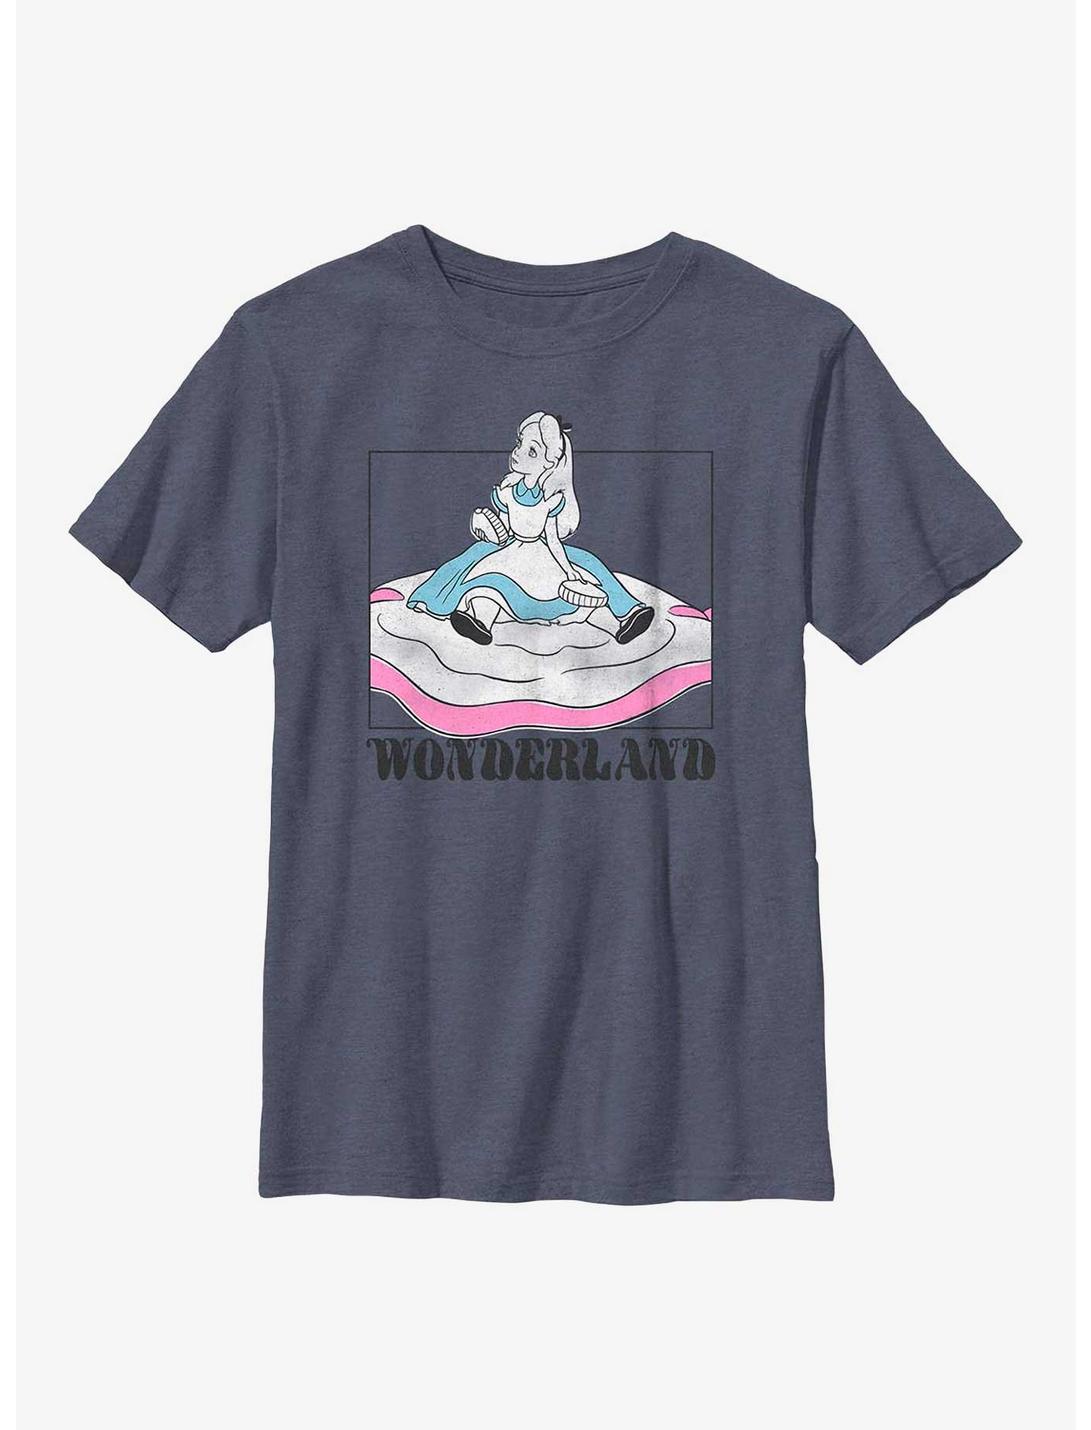 Disney Alice In Wonderland Soft Pop Wonderland Youth T-Shirt, NAVY HTR, hi-res